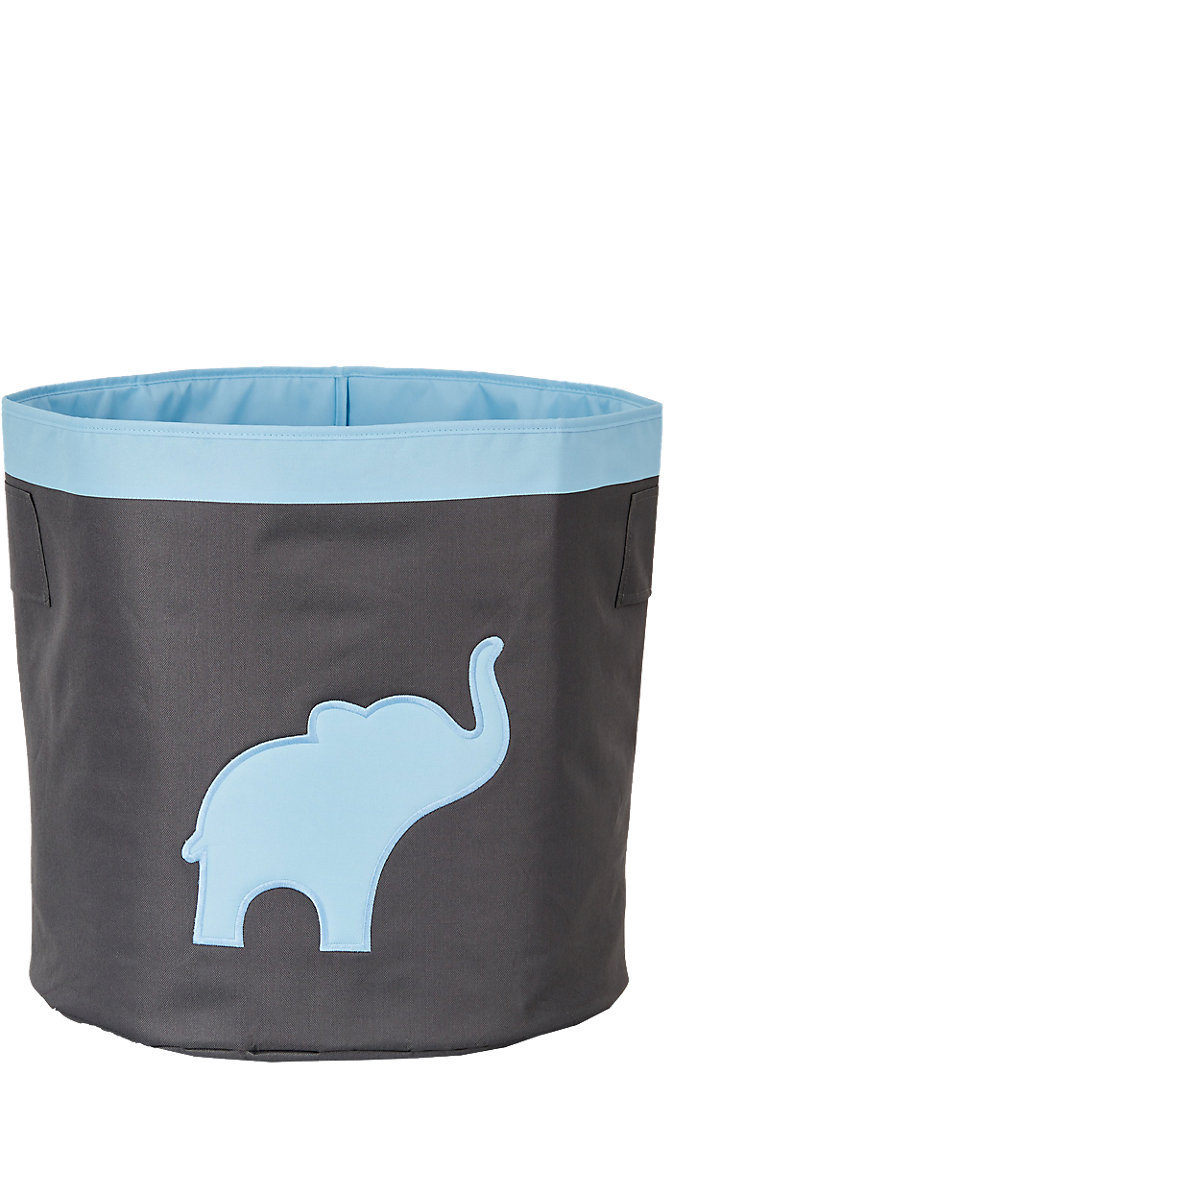 STORE IT! Aufbewahrungskorb Maxi Elefant grau/blau mit Tragegriffen 44 x 44 x 44 cm